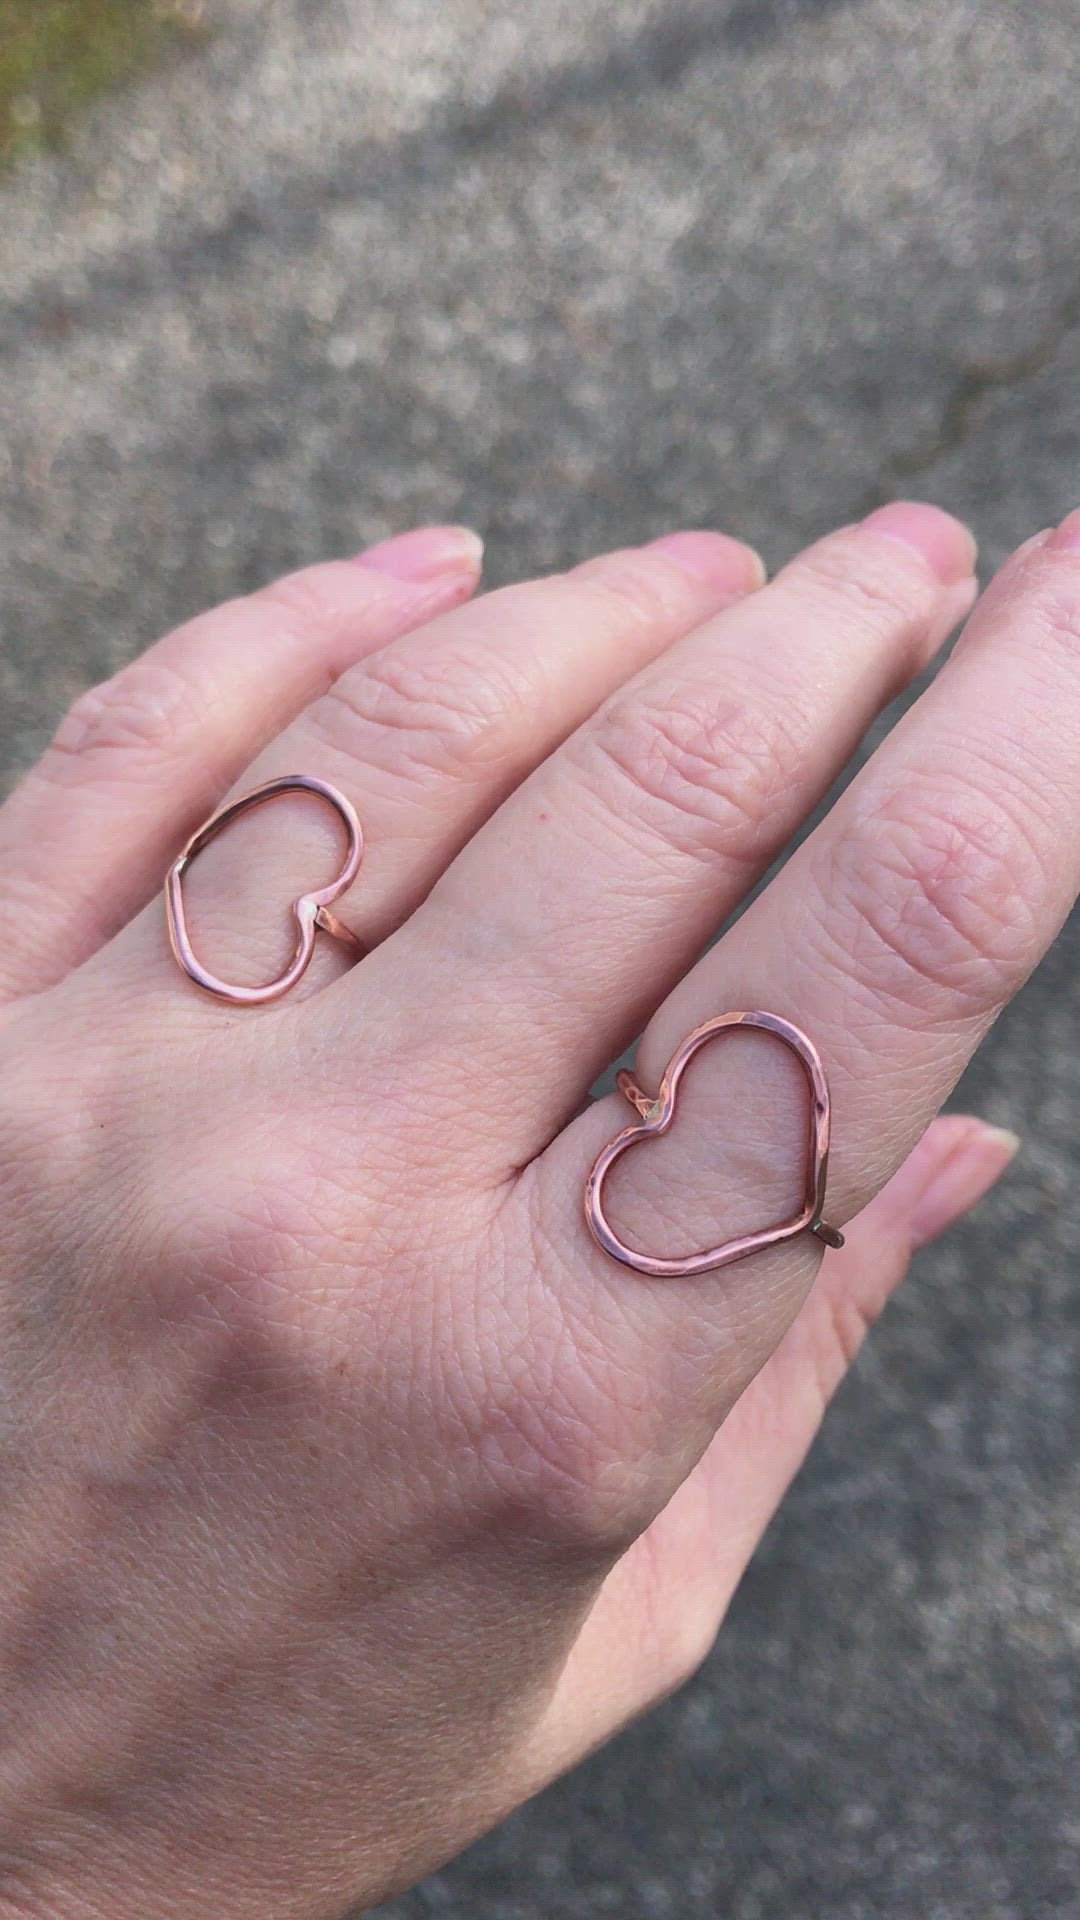 copper heart ring minimalist jewellery Victoria BC Vancouver Island Canada